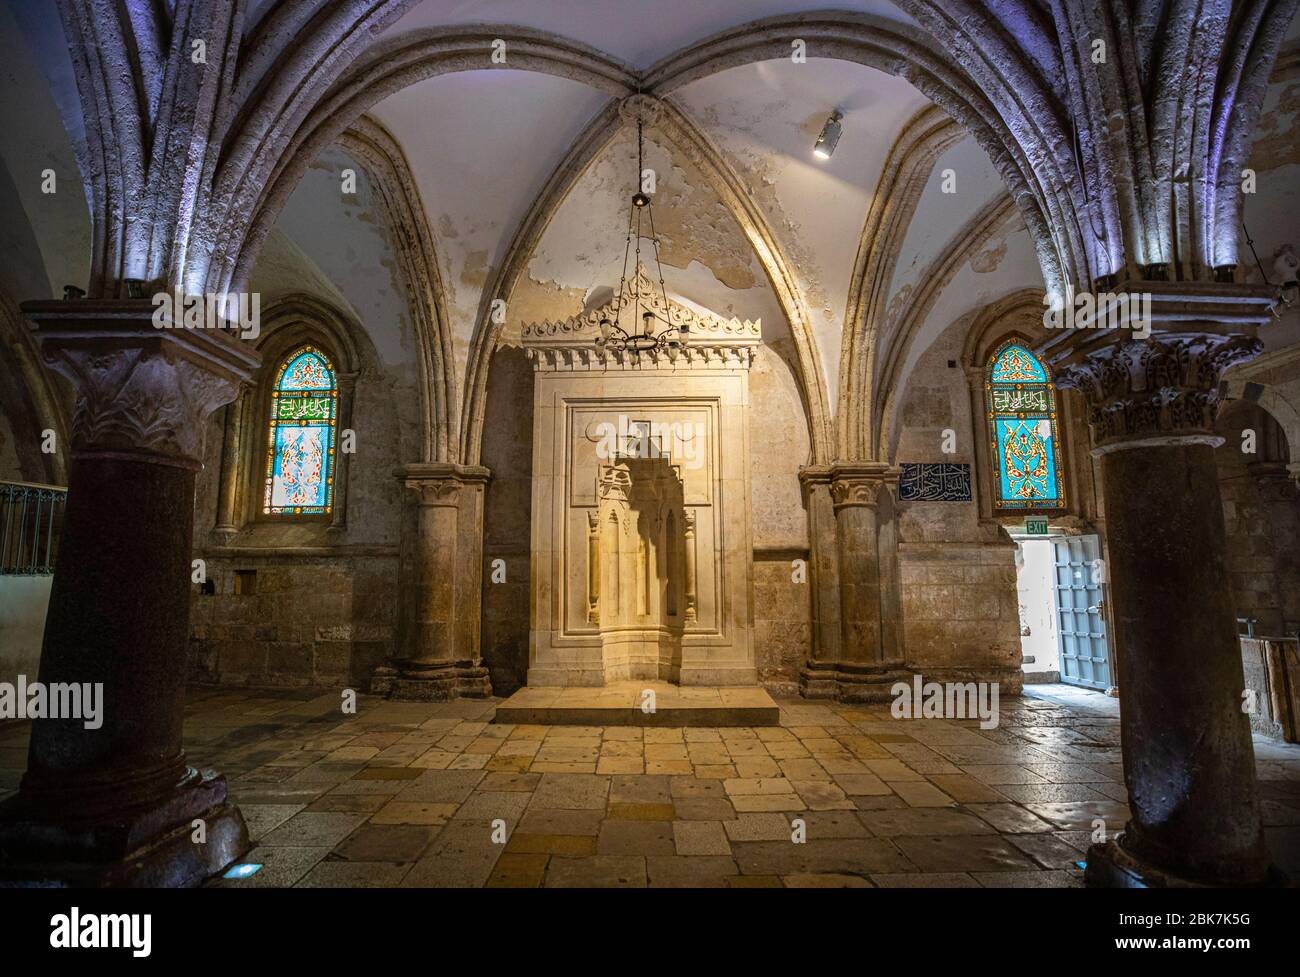 Le Cénacle, salle de la Cène, de la tombe du roi David à Jérusalem, Israël Banque D'Images